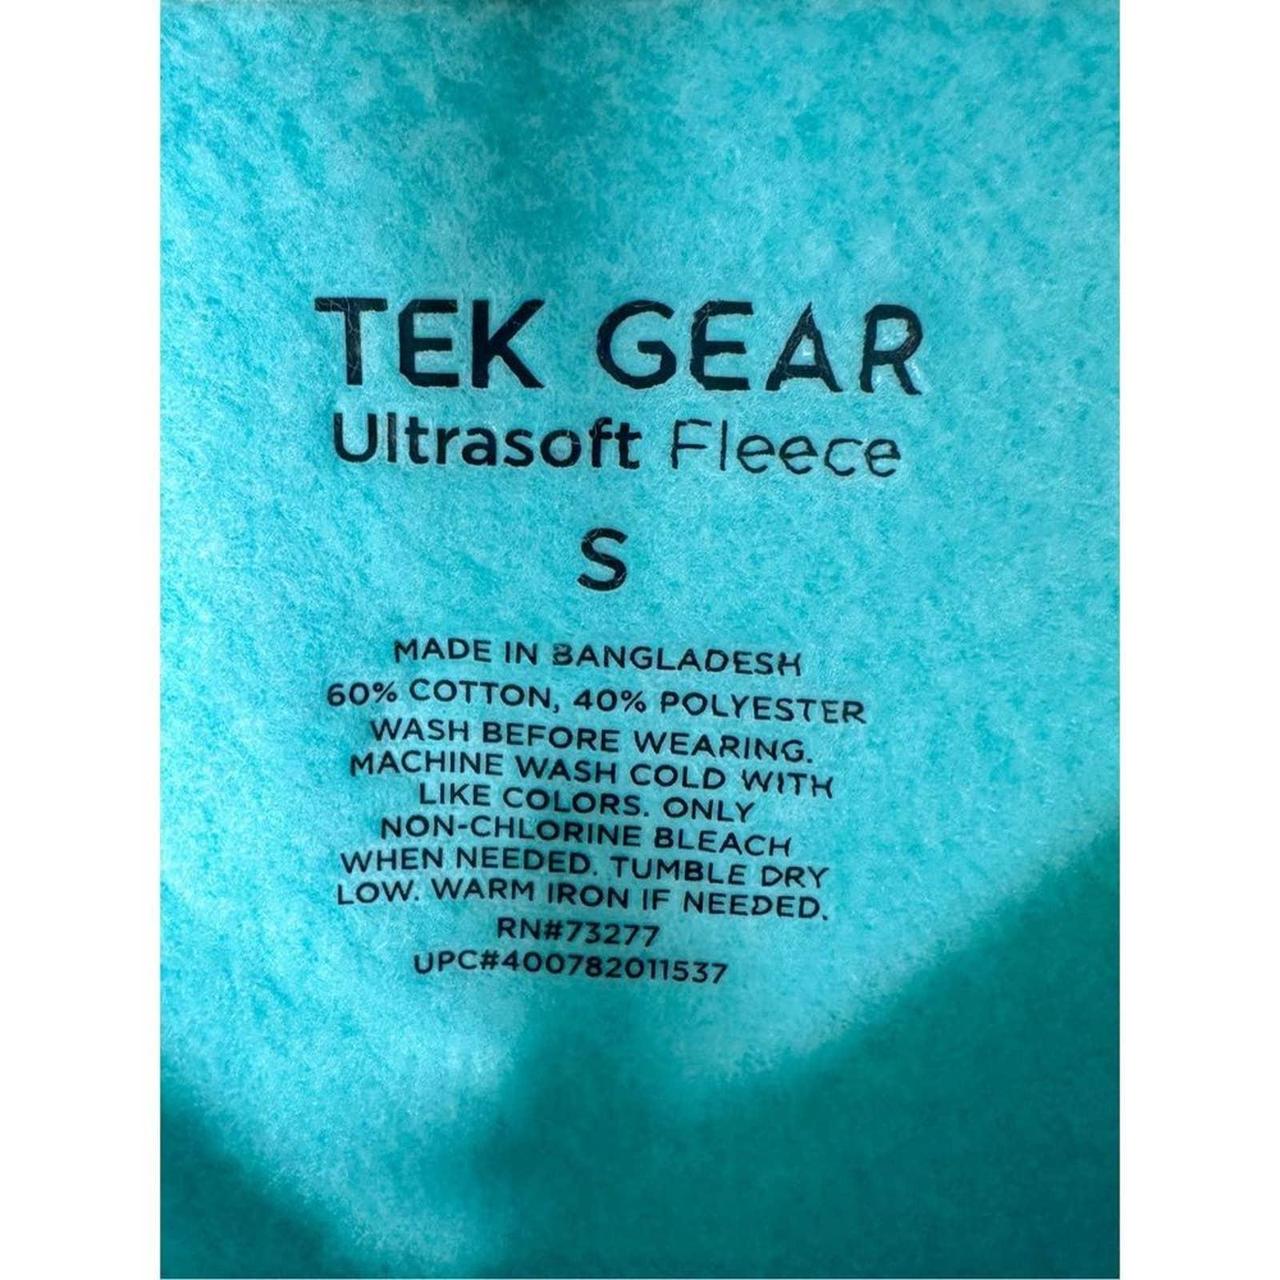 Tek Gear 'Ultrasoft Fleece' Quarterzip! It is - Depop